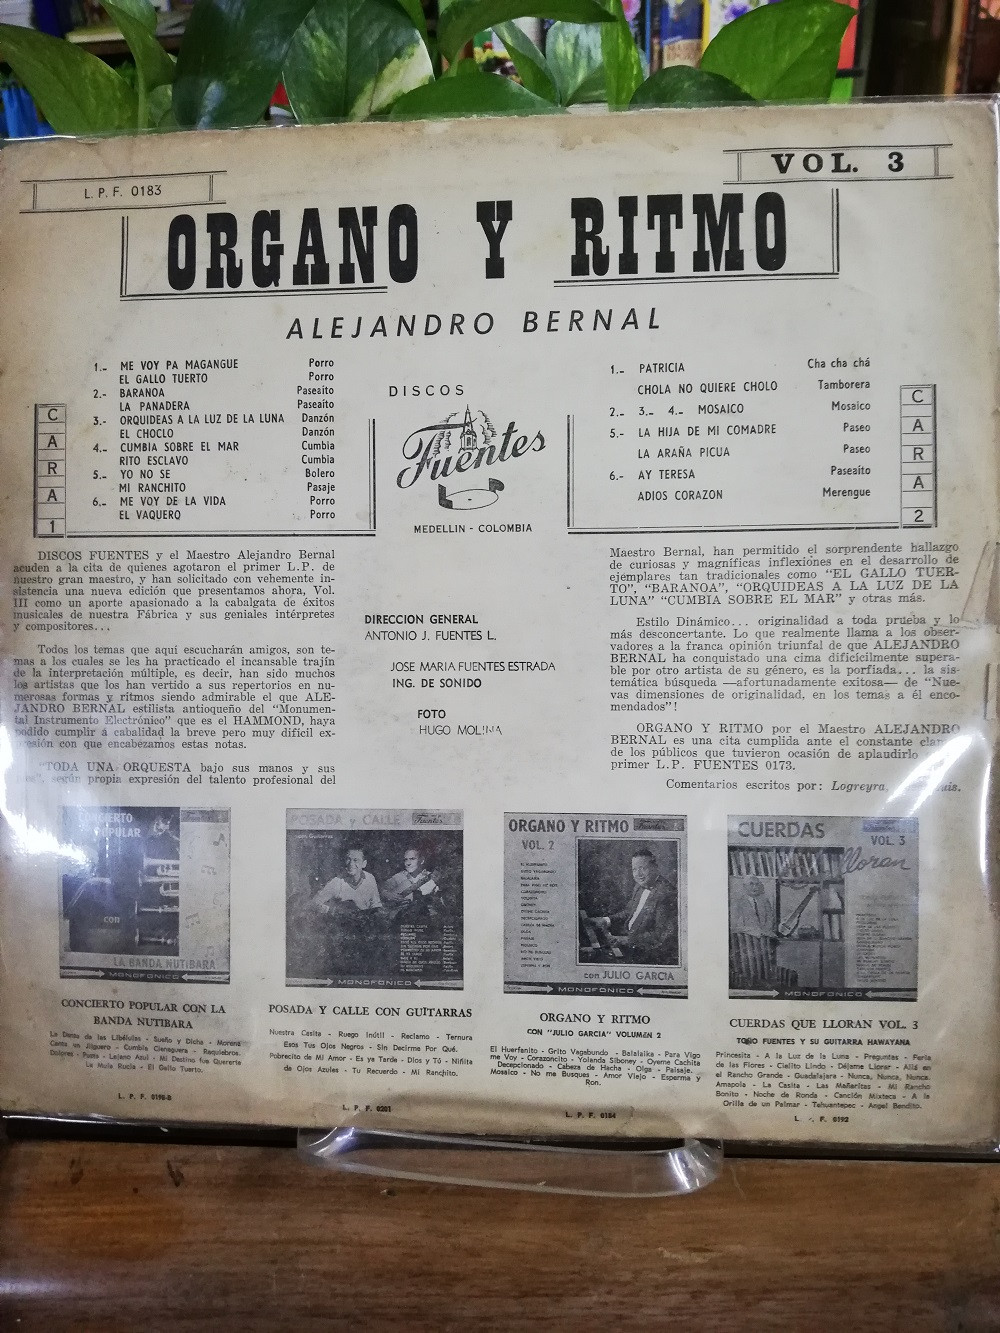 Imagen LP ALEJANDRO BERNAL - ORGANO Y RITMO VOL. 3 2